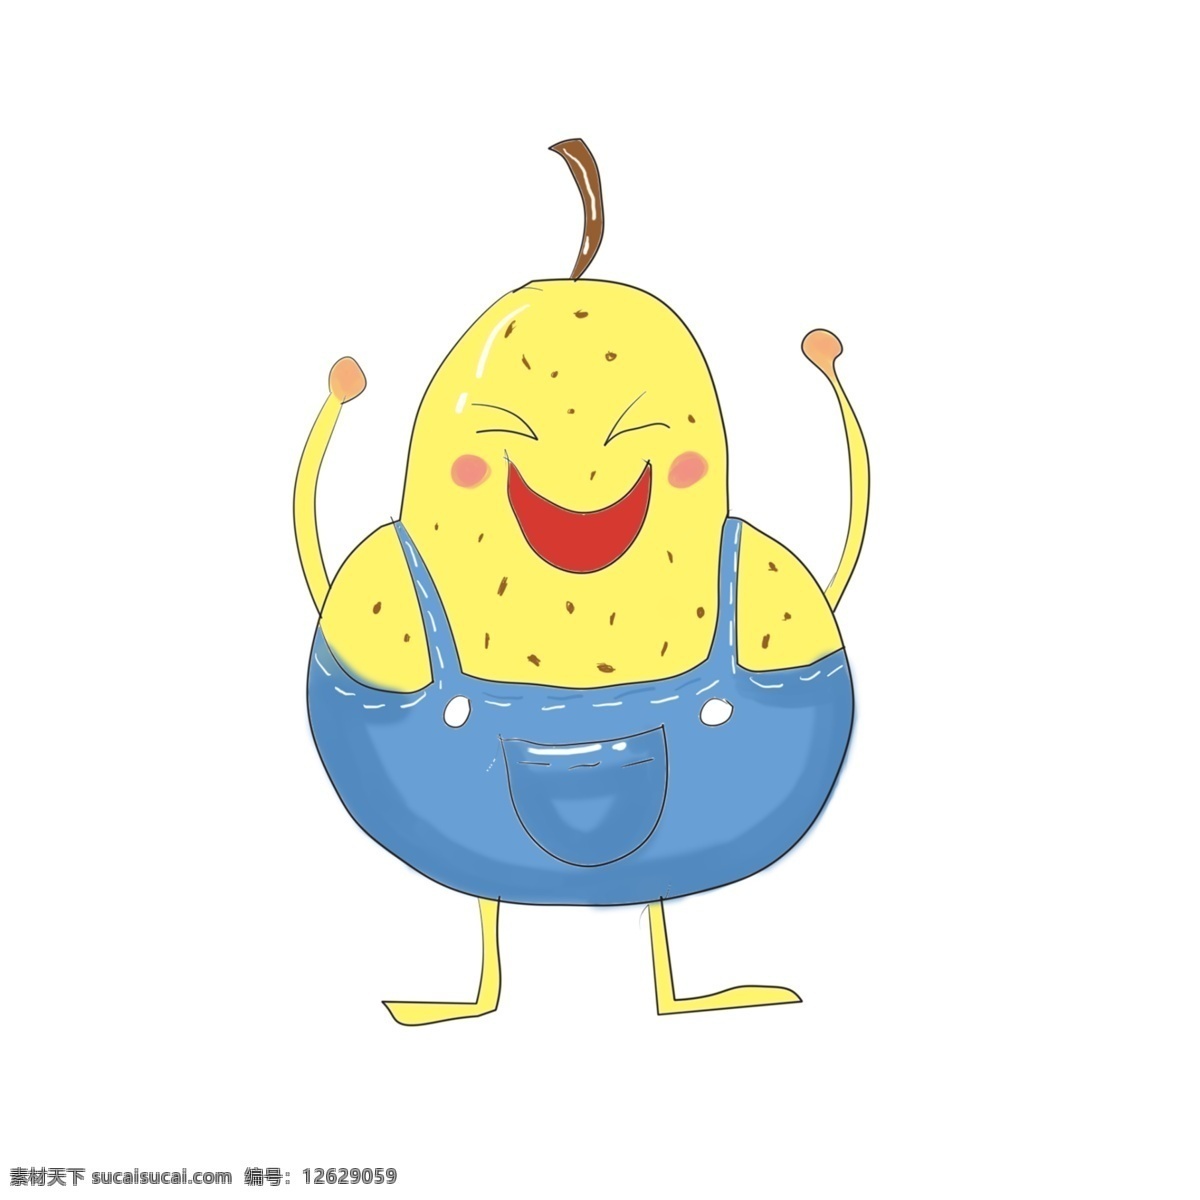 开心 水果 笑脸 插画 开心的水果 微笑插画 开心插画 卡通插画 头像插画 笑脸插画 微笑的水果